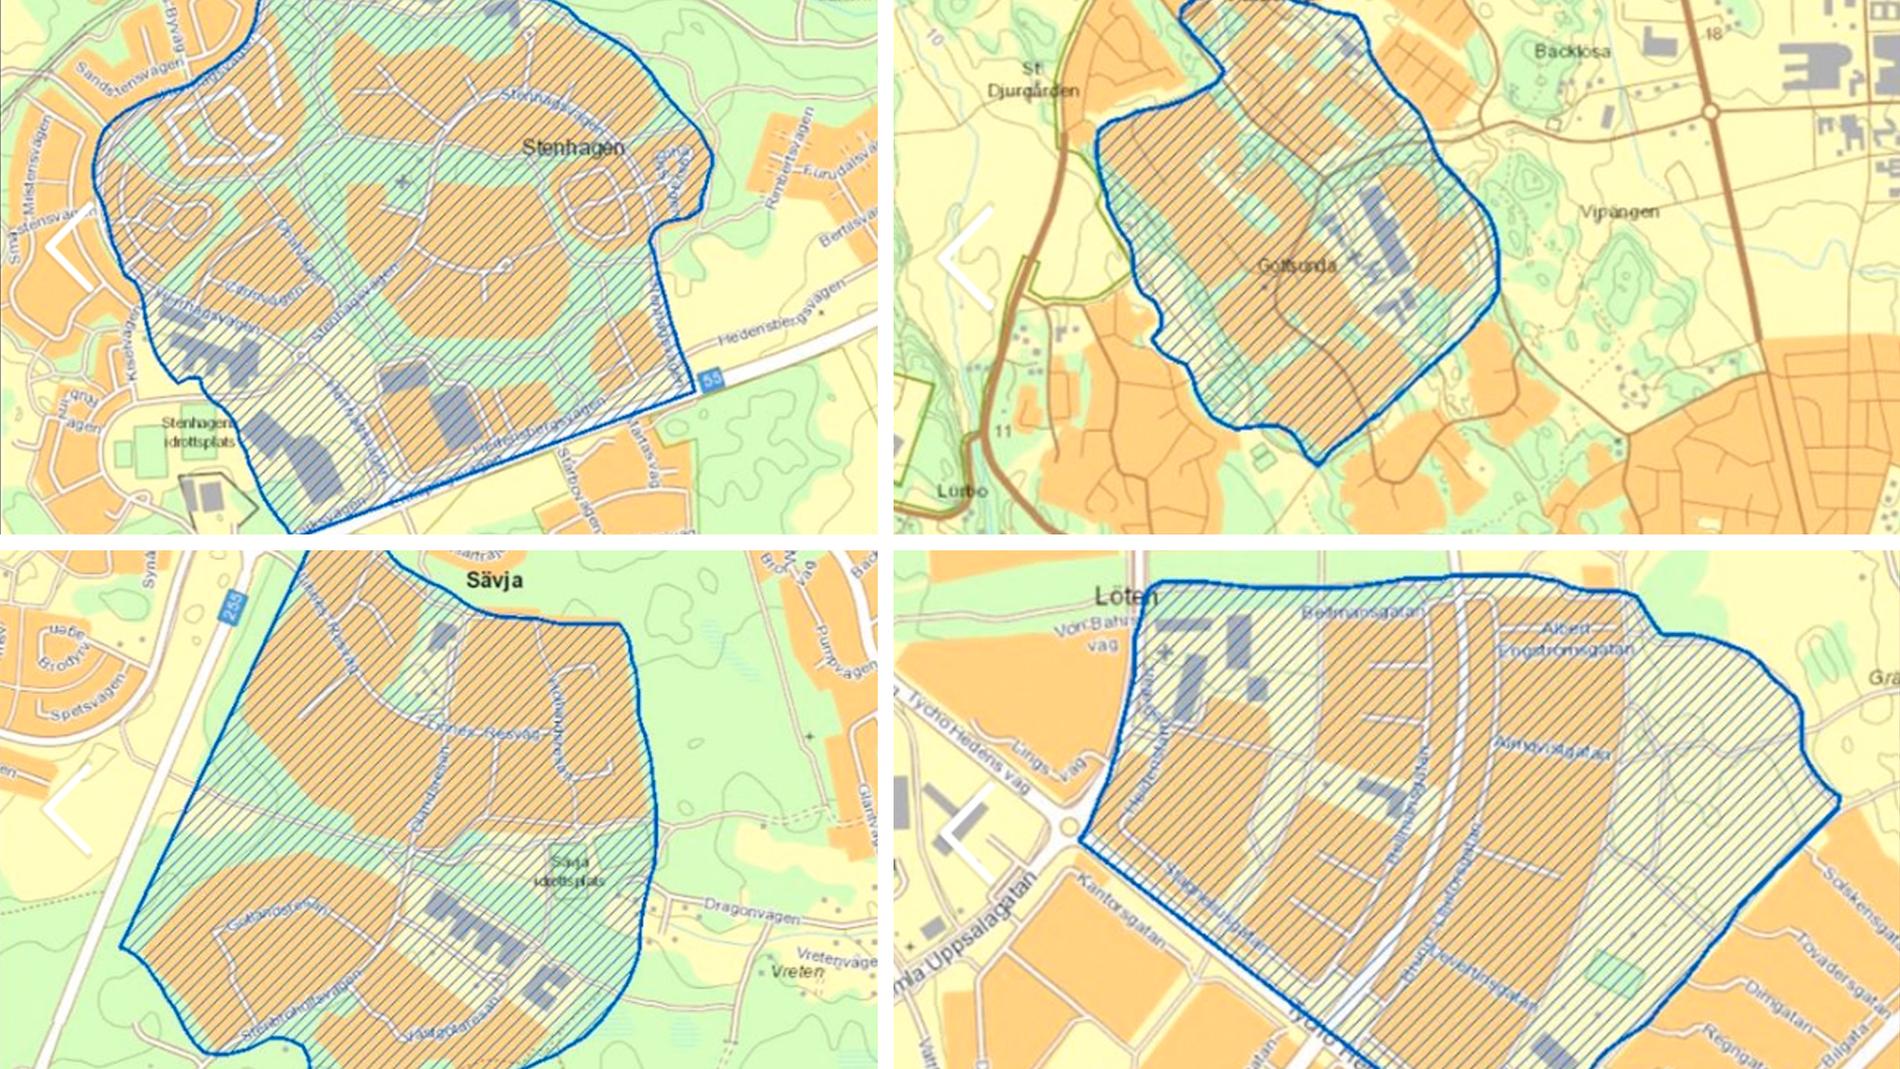 Gottsunda/Valsätra, Gränby, Stenhagen och Sävja är de områden som kommer börja övervakas.